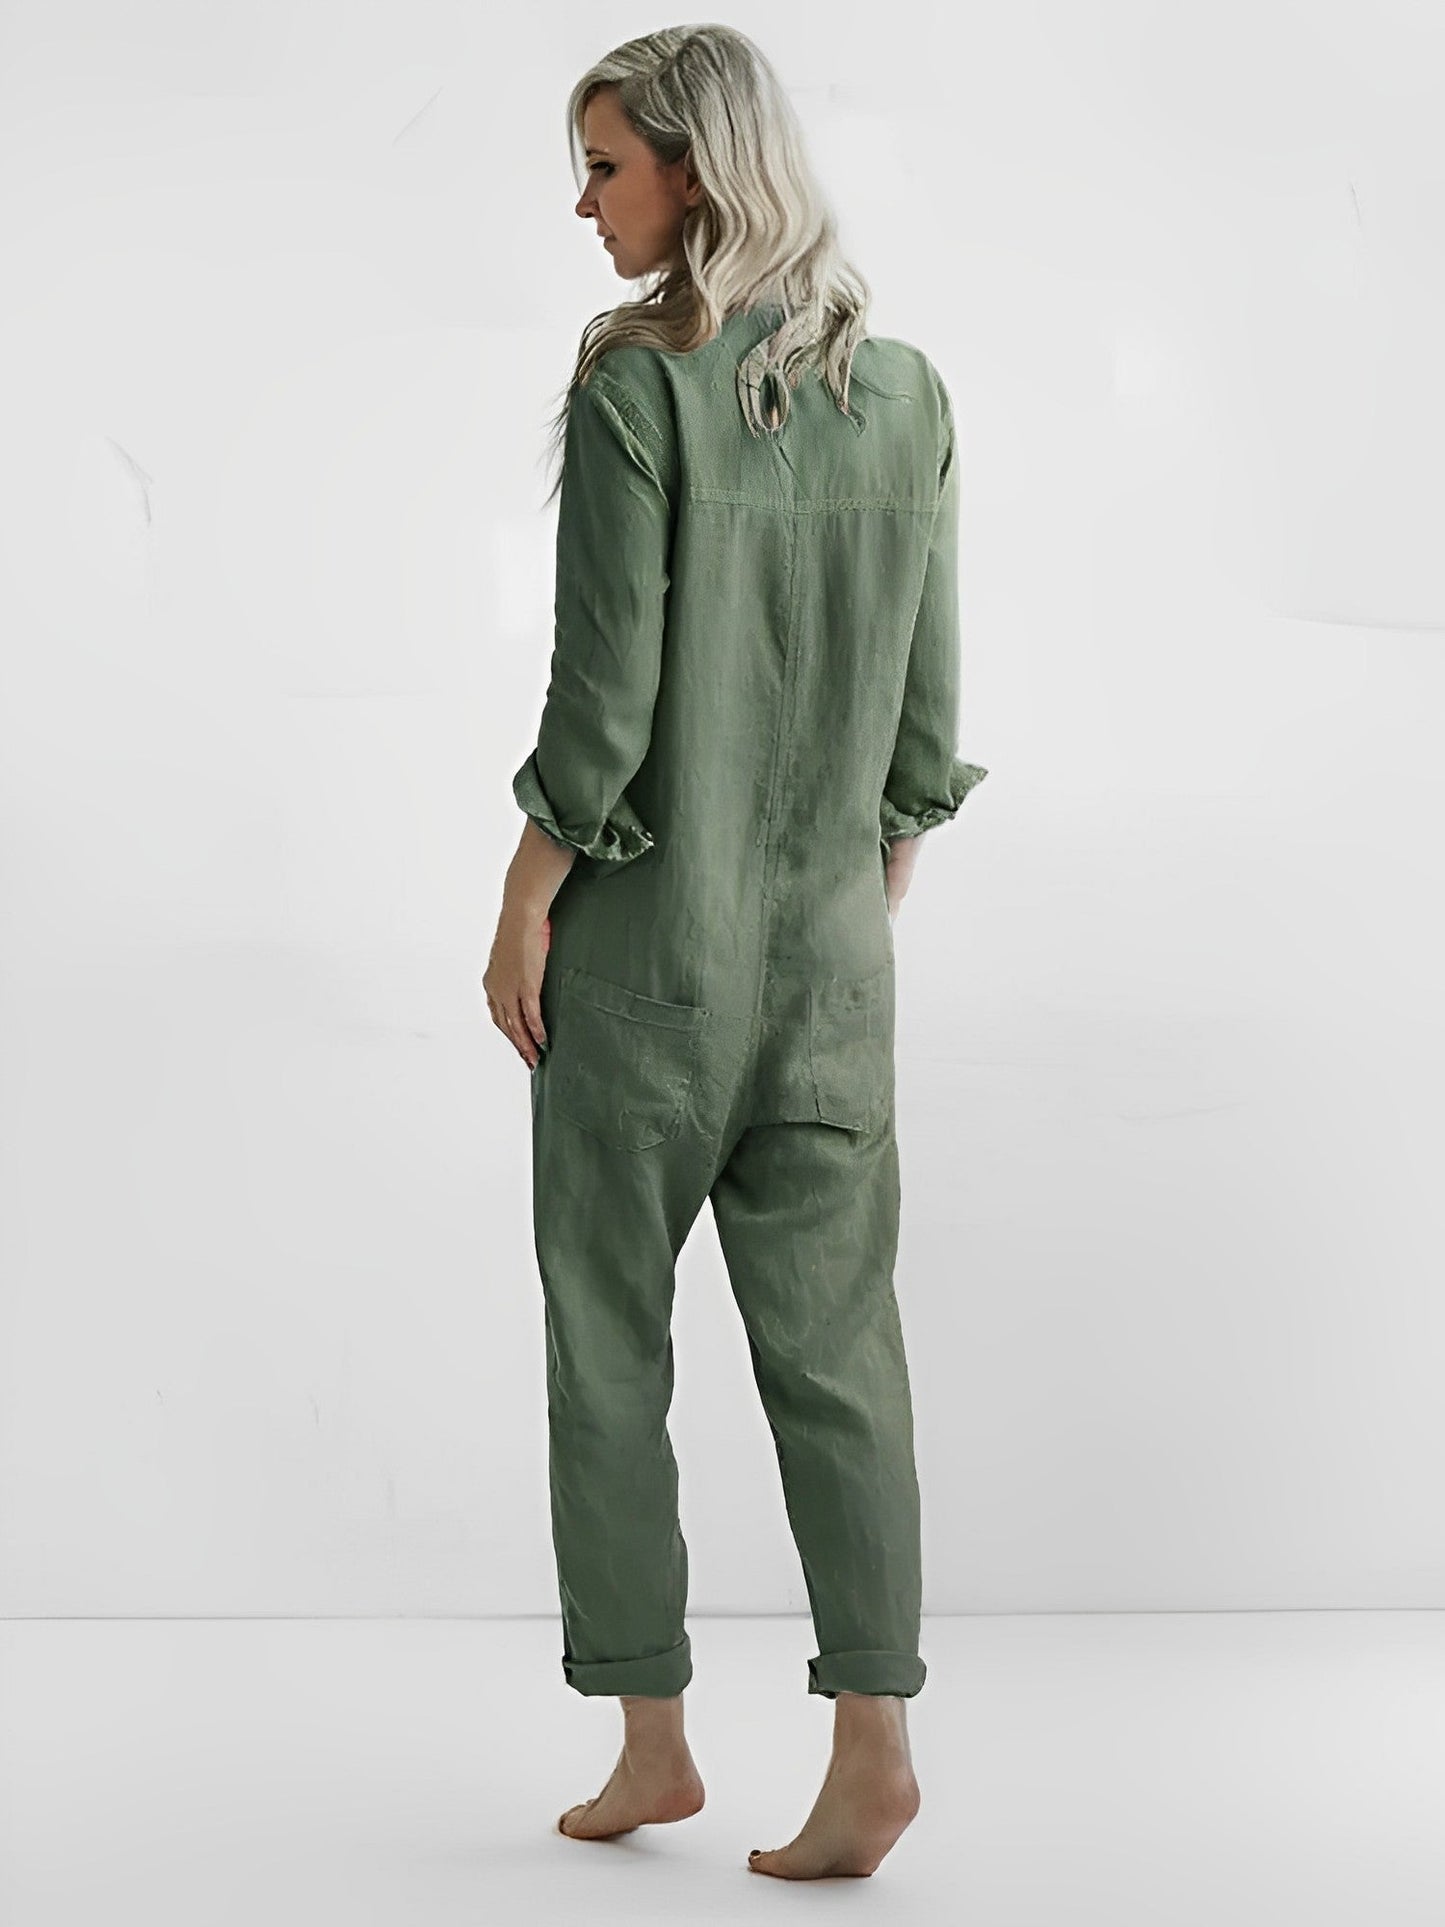 Lysa- Stylischer grüner Jumpsuit